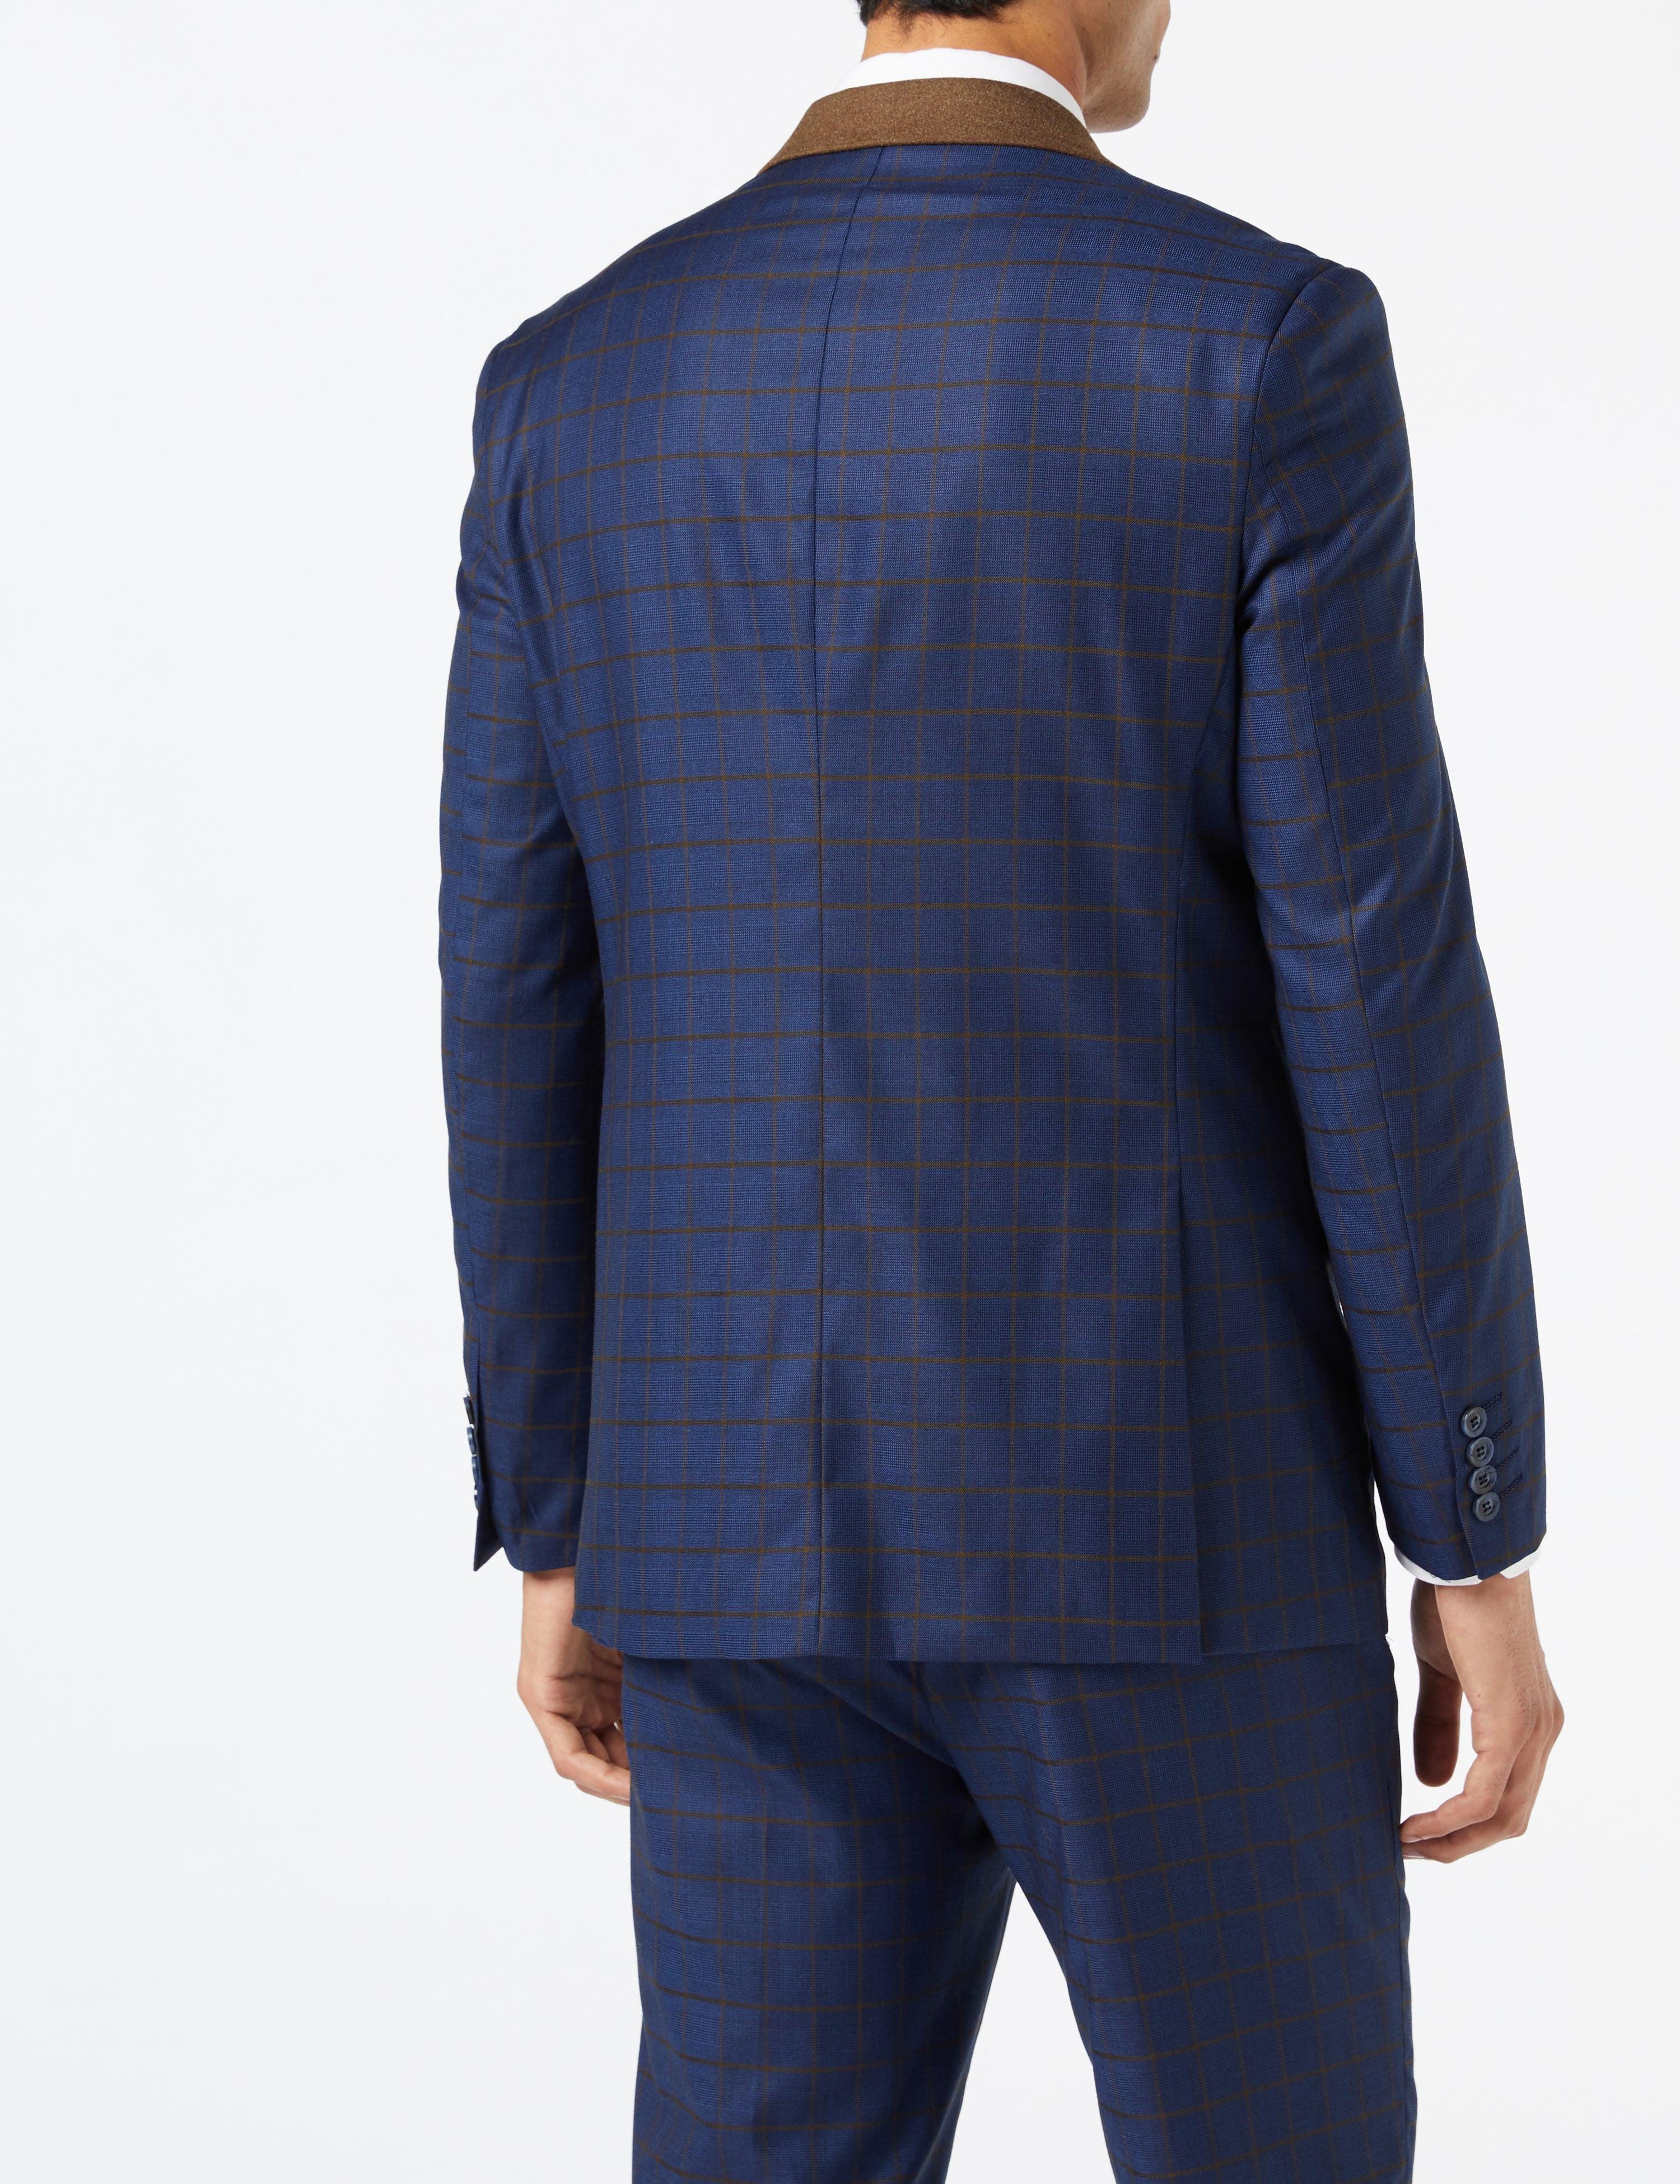 FALCO Blue Grid Check Suit